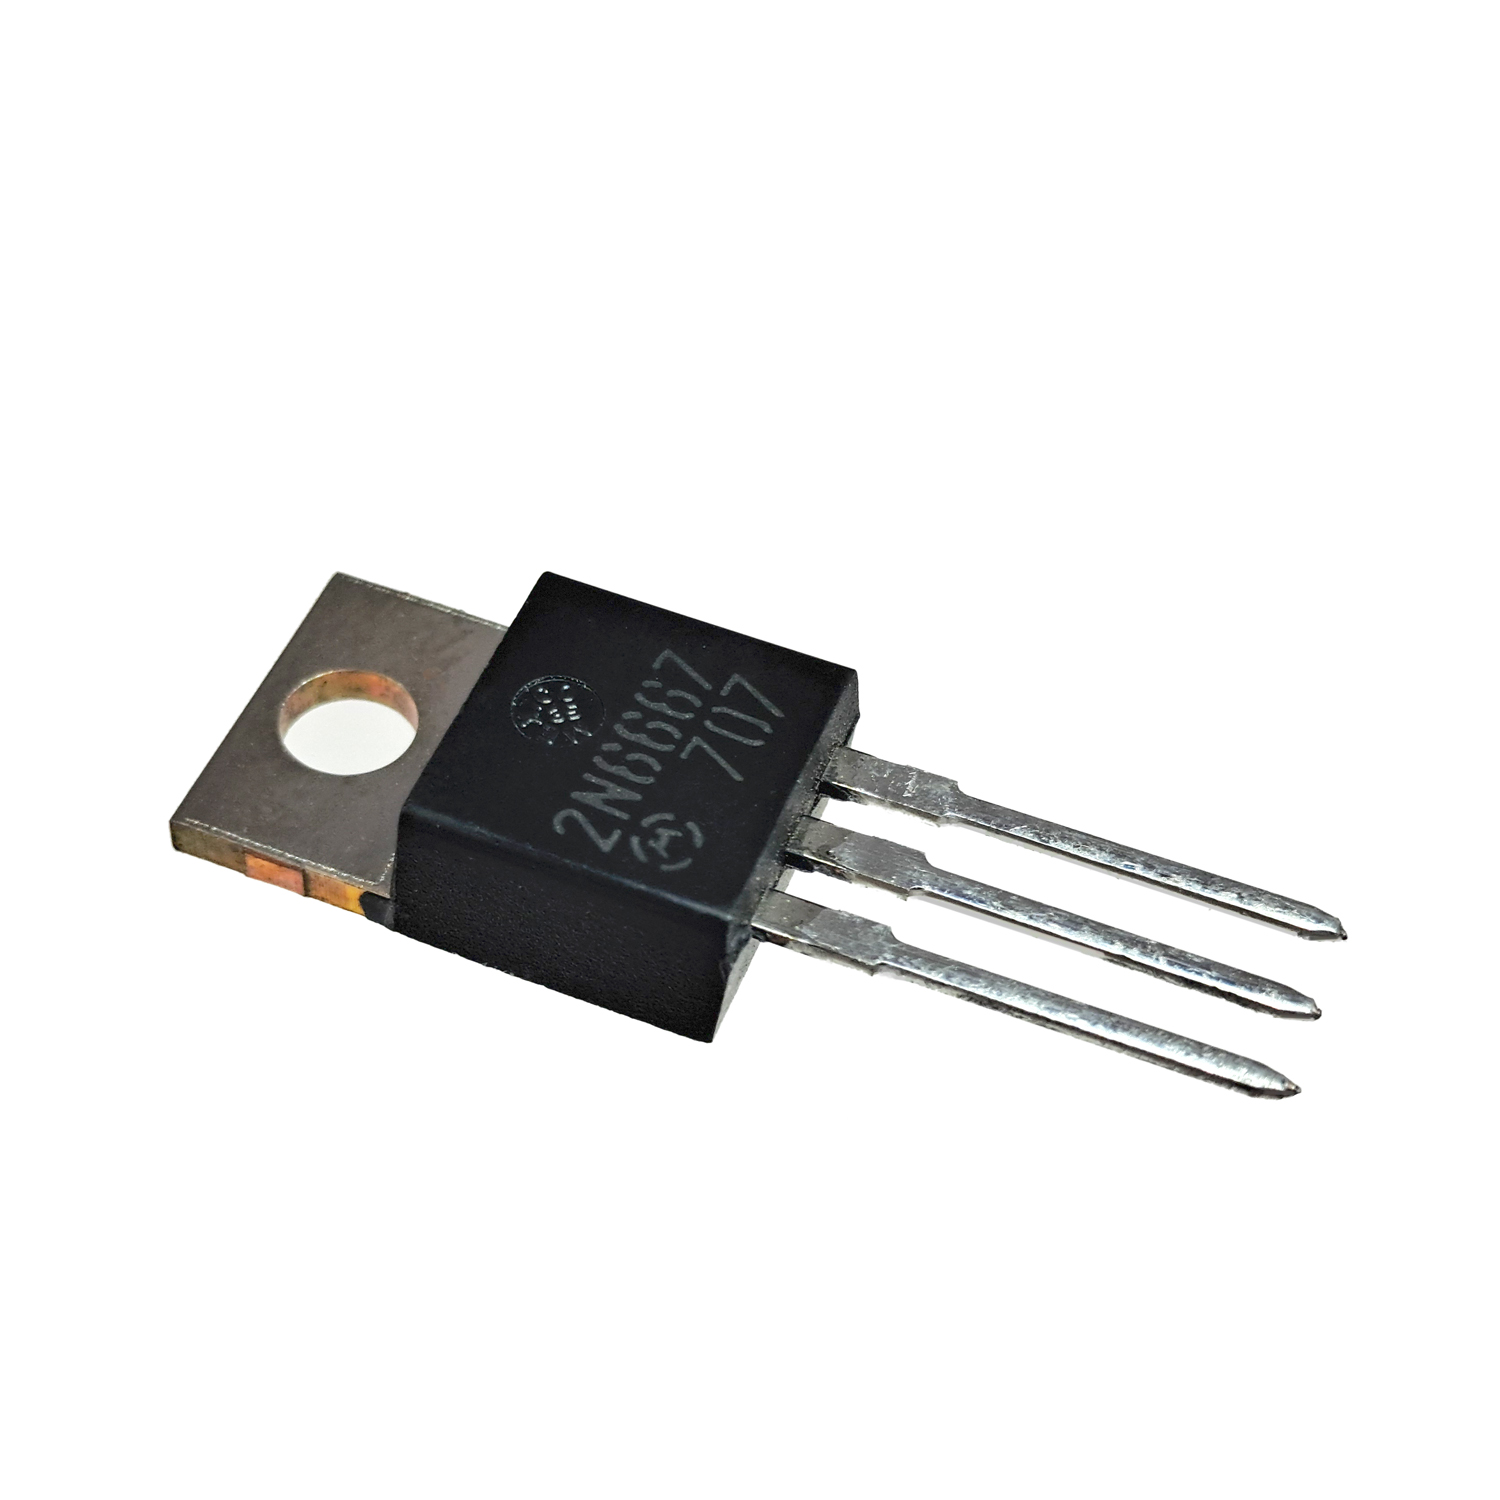 2N6667 60V 8A PNP Darlington Power Transistor